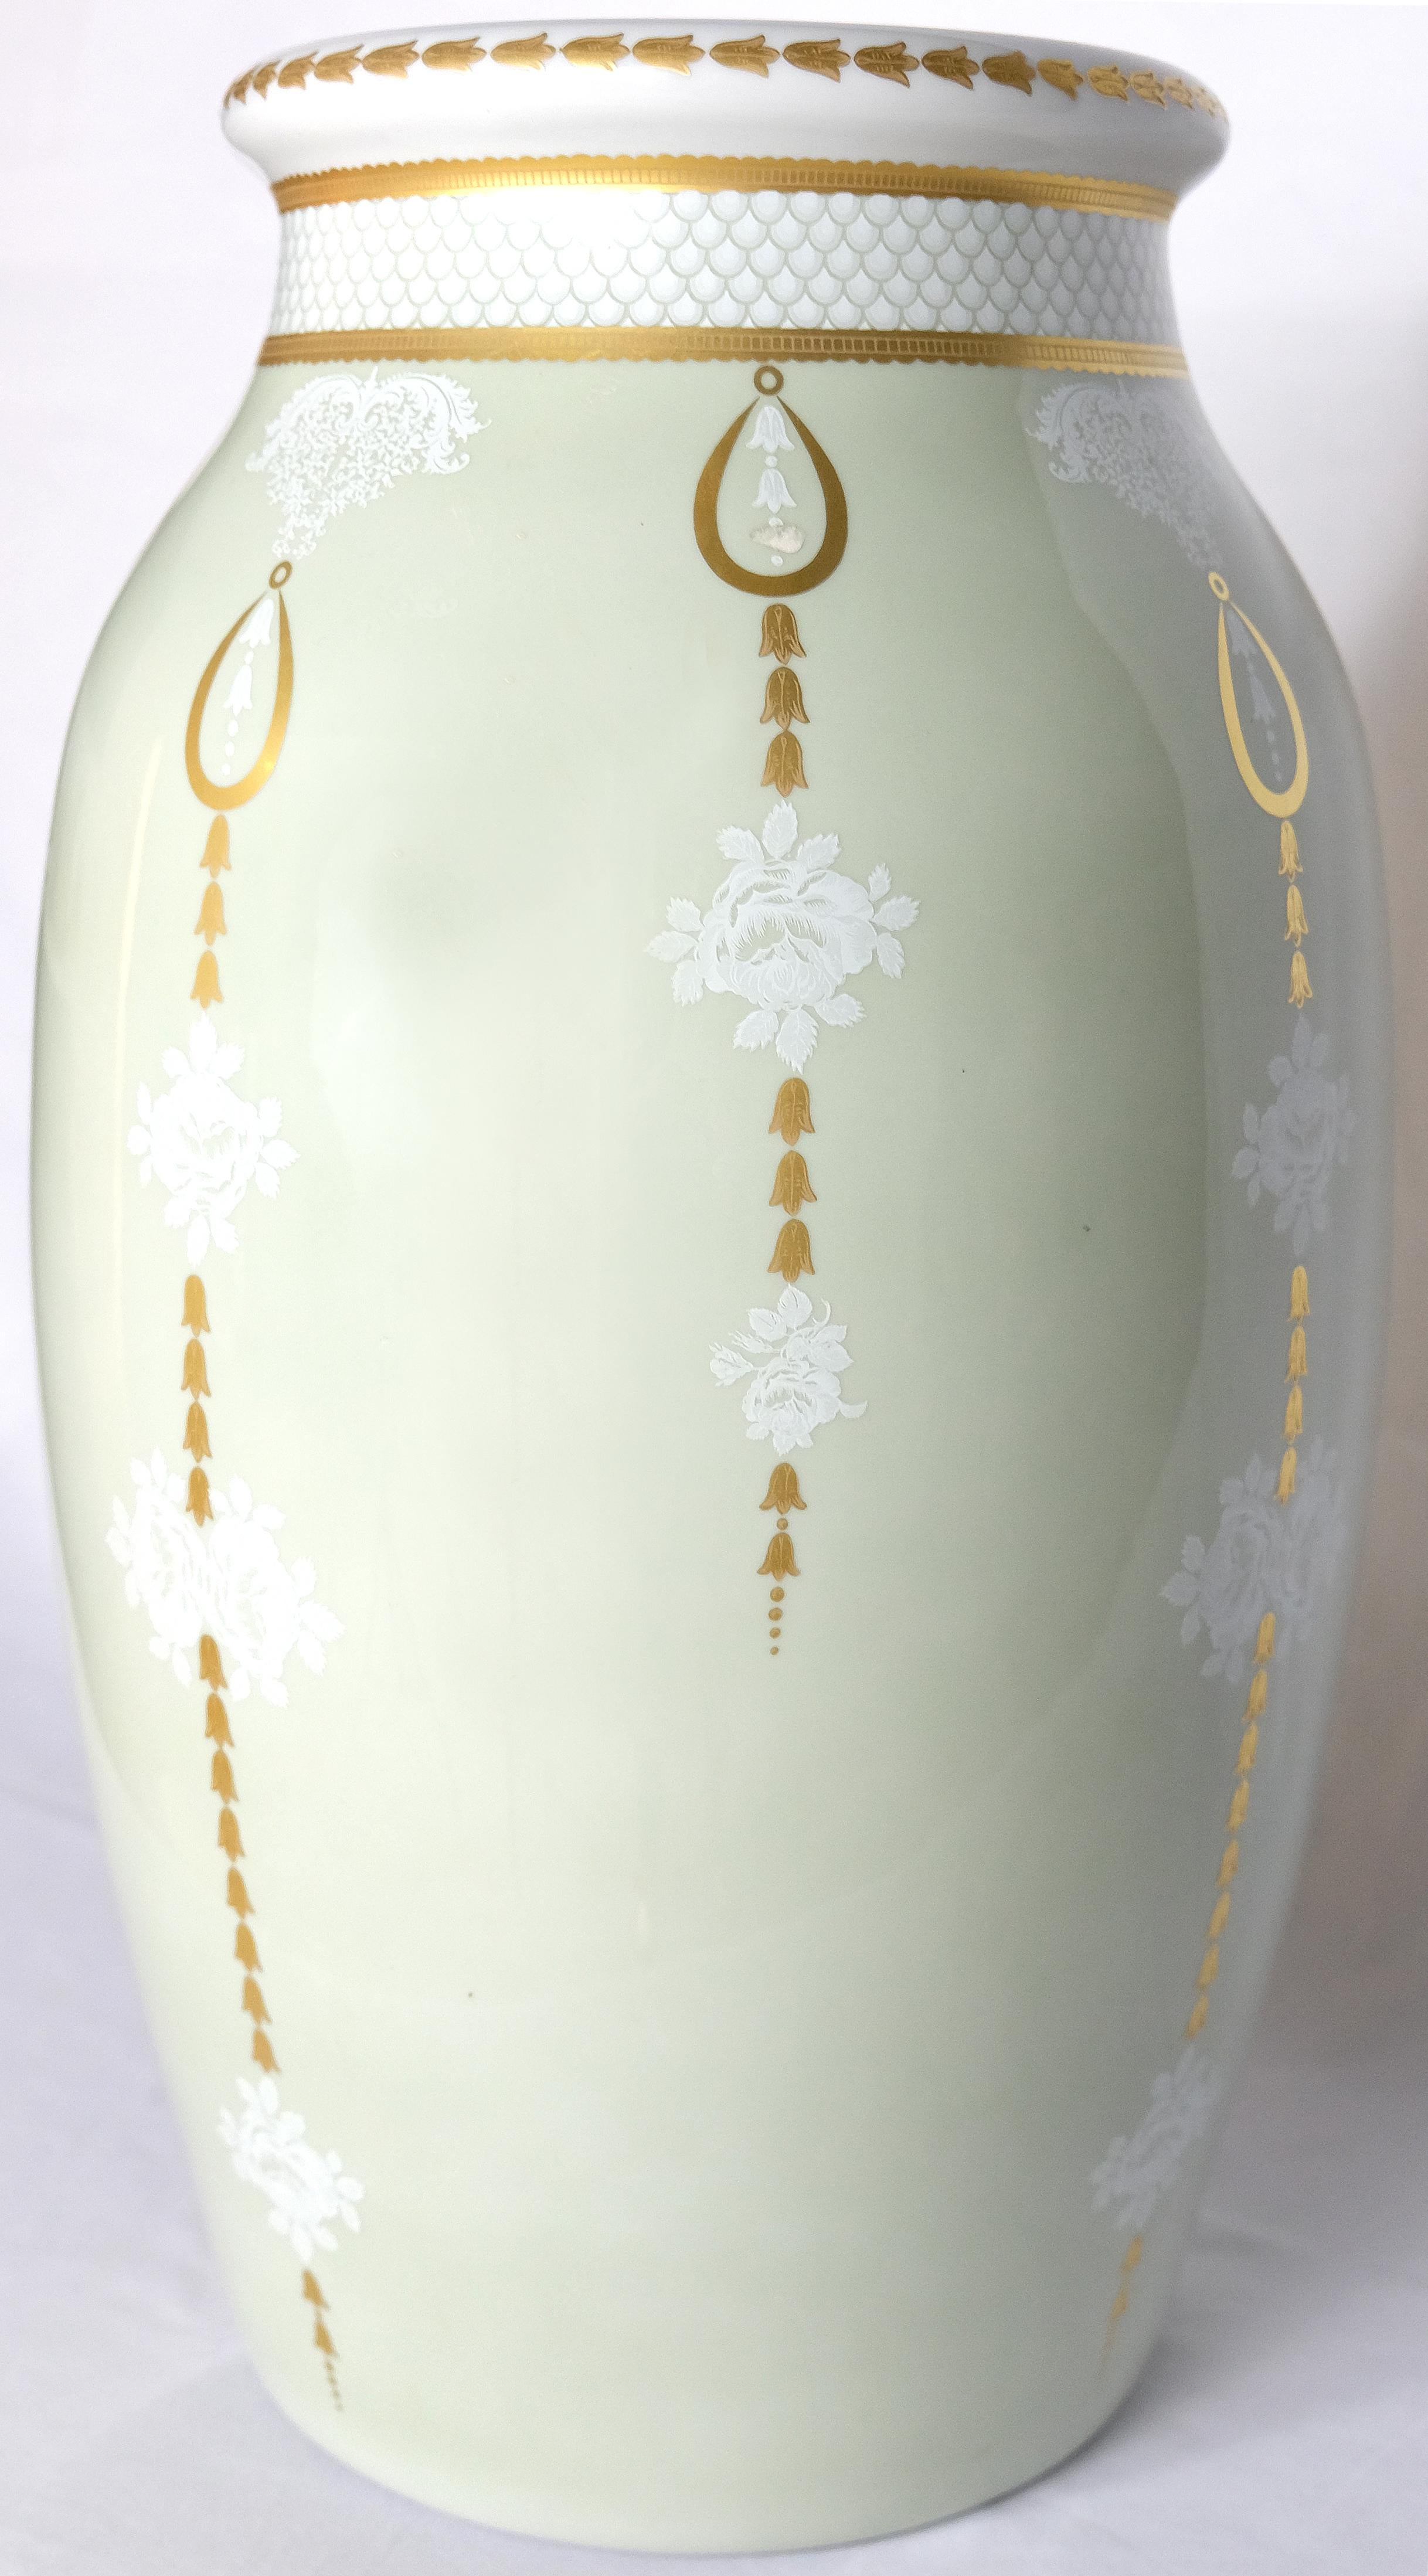 Mangani, Italien Klassischer Schirmständer aus Porzellan in Vasen- oder Urnenform 

Zum Verkauf angeboten wird eine elegante Porzellan-Vase oder Urne Form Schirmständer von Mangani von Italien. Der Schirmständer ist in dezenten Farben glasiert und